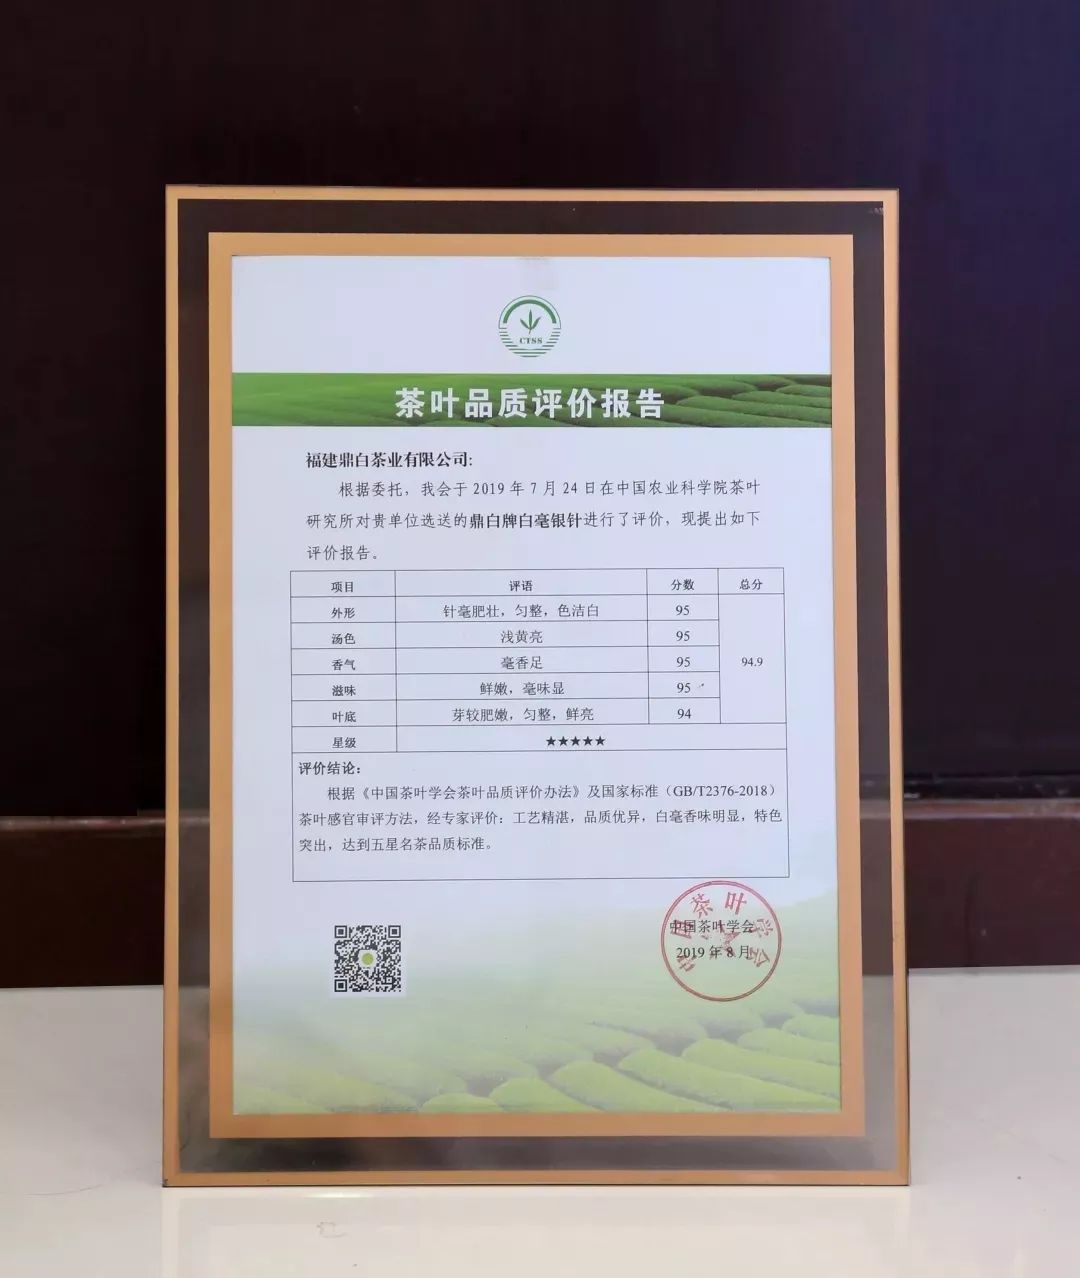 中国茶叶学会出具的茶叶品质评价报告中 鼎白牌白毫银针被评为五星